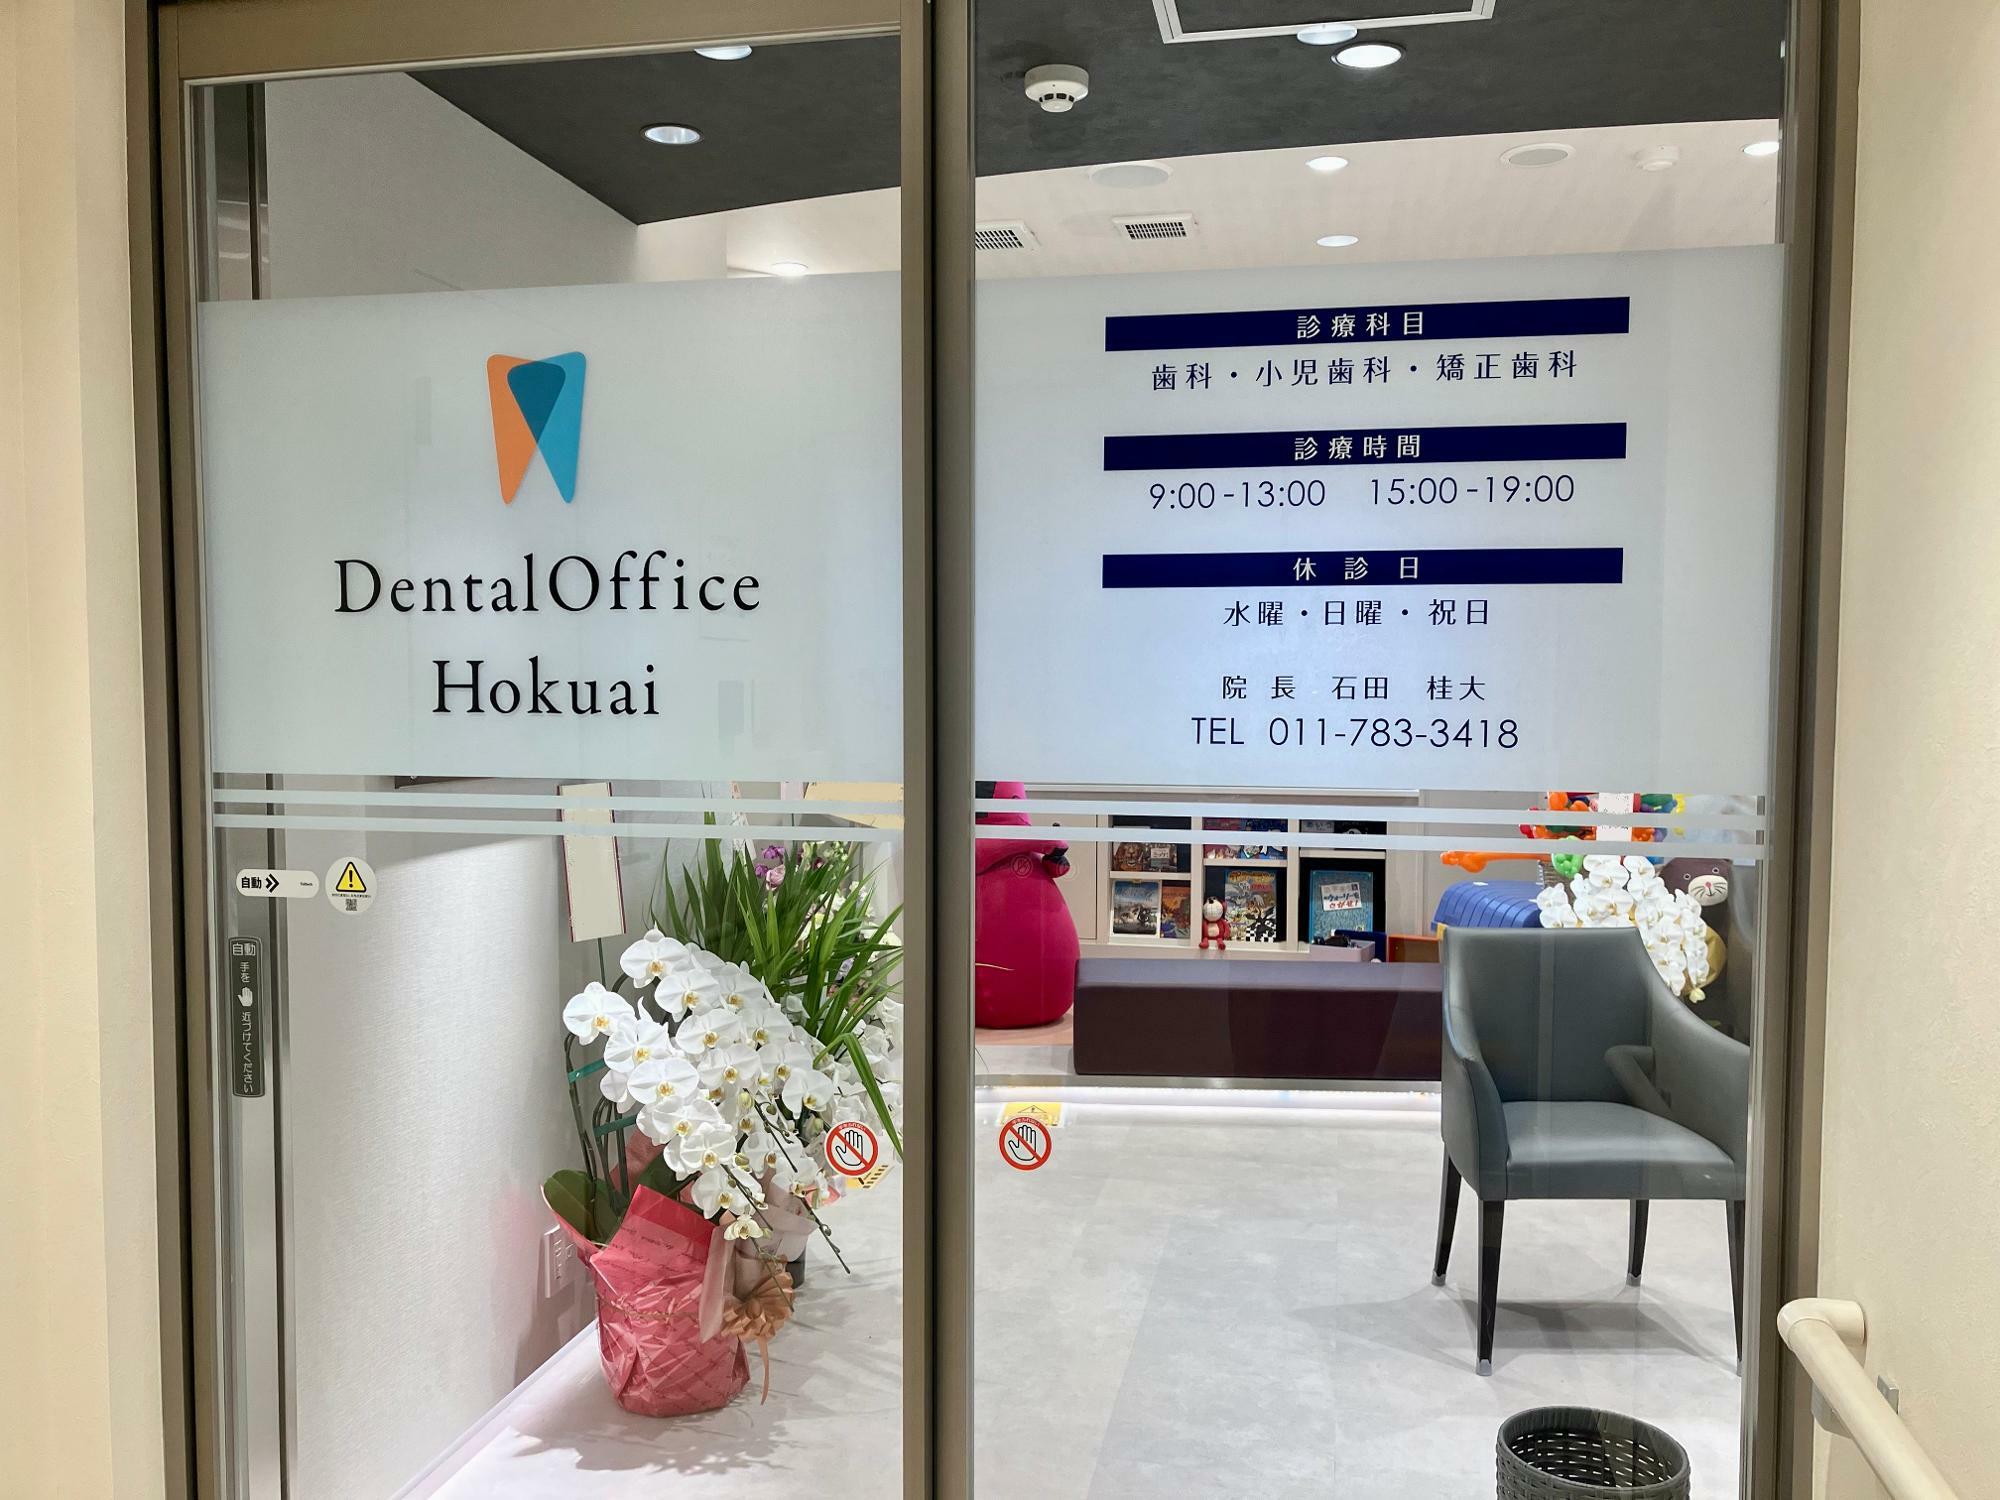 右側が「Dental Office Hokuai」エントランス。